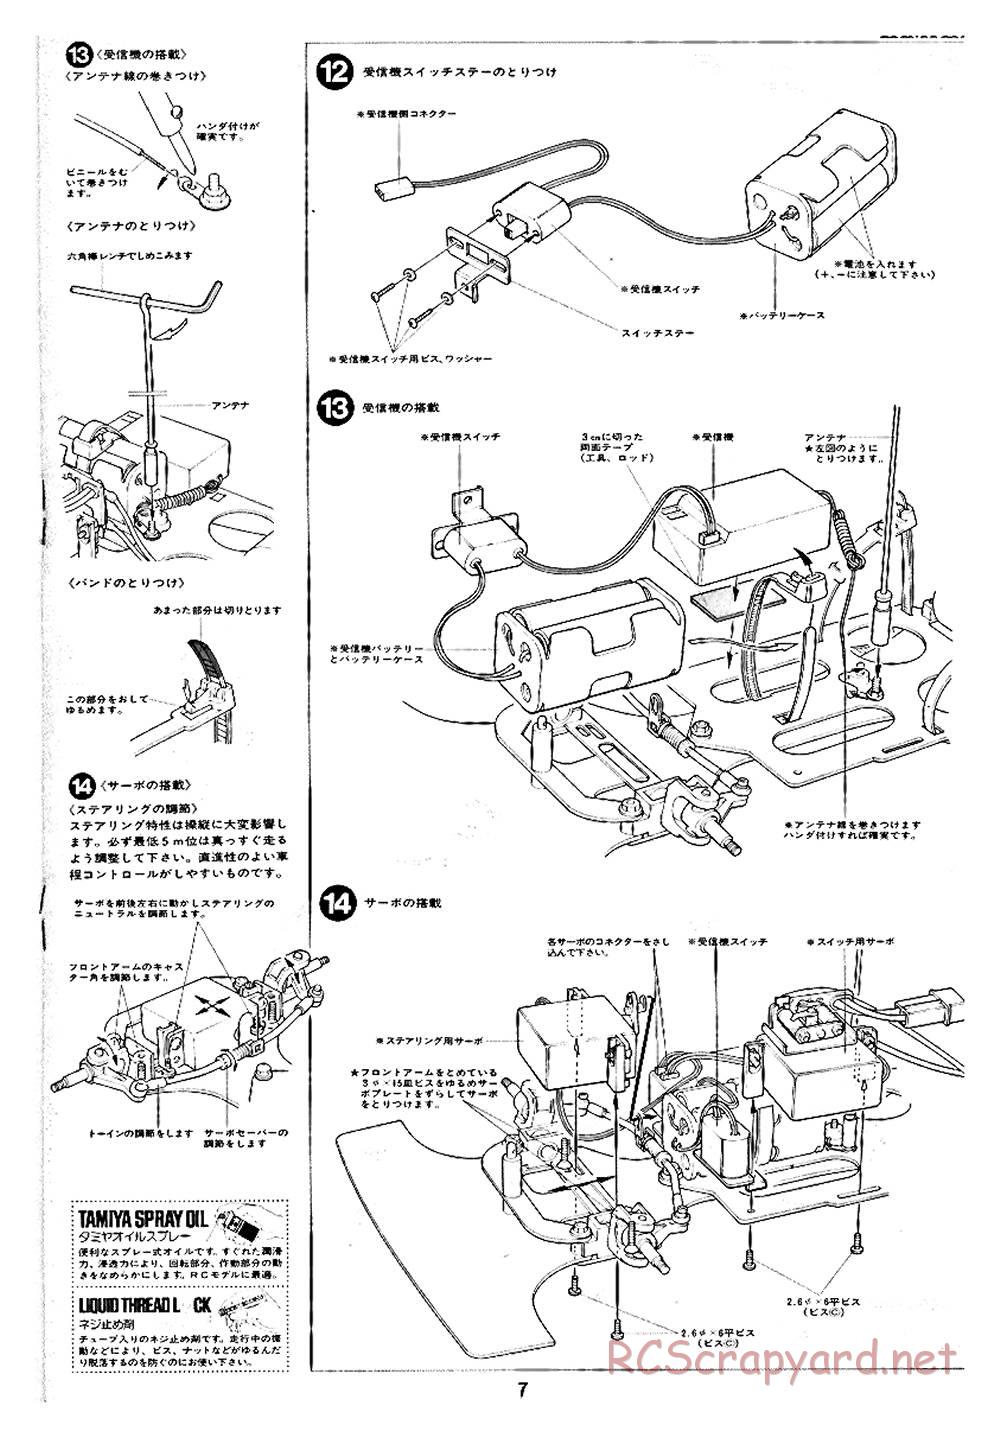 Tamiya - Ford C100 - RM MK.4 - 58033 - Manual - Page 7